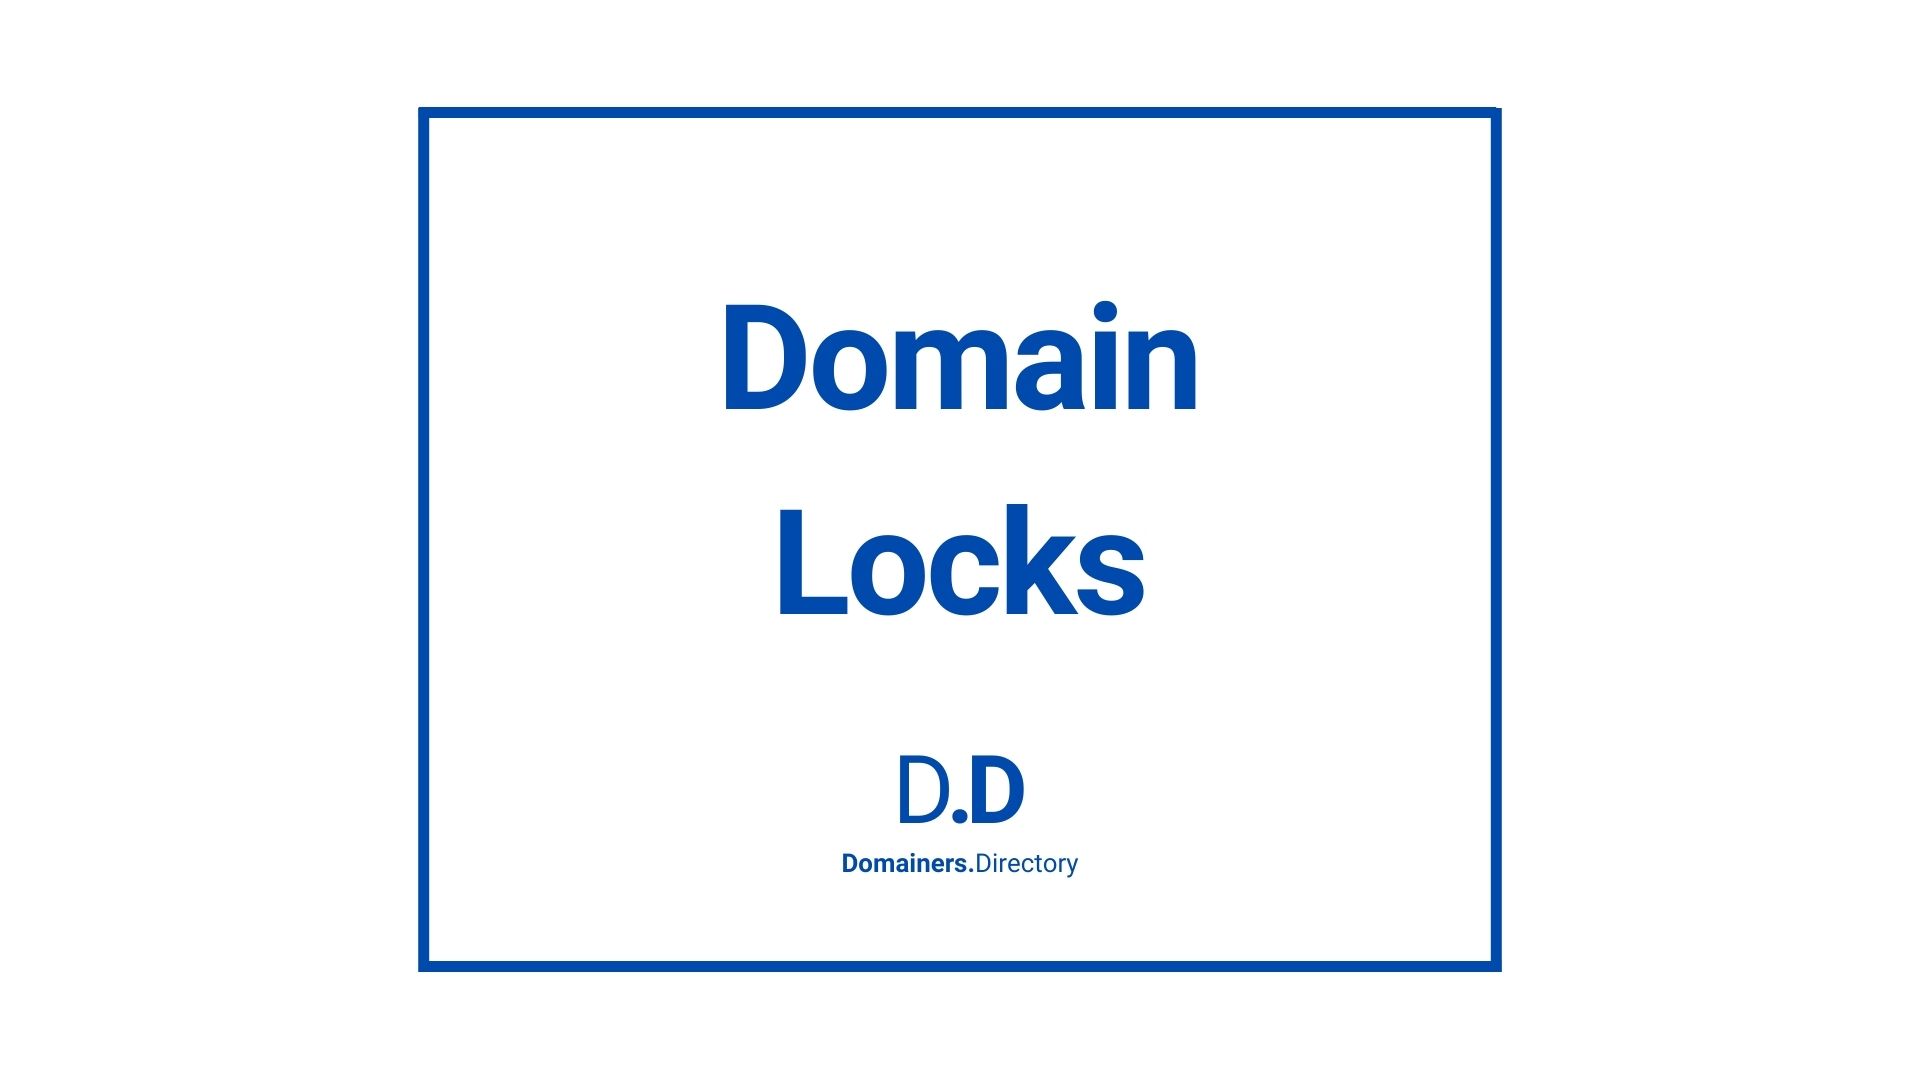 Domain Locks